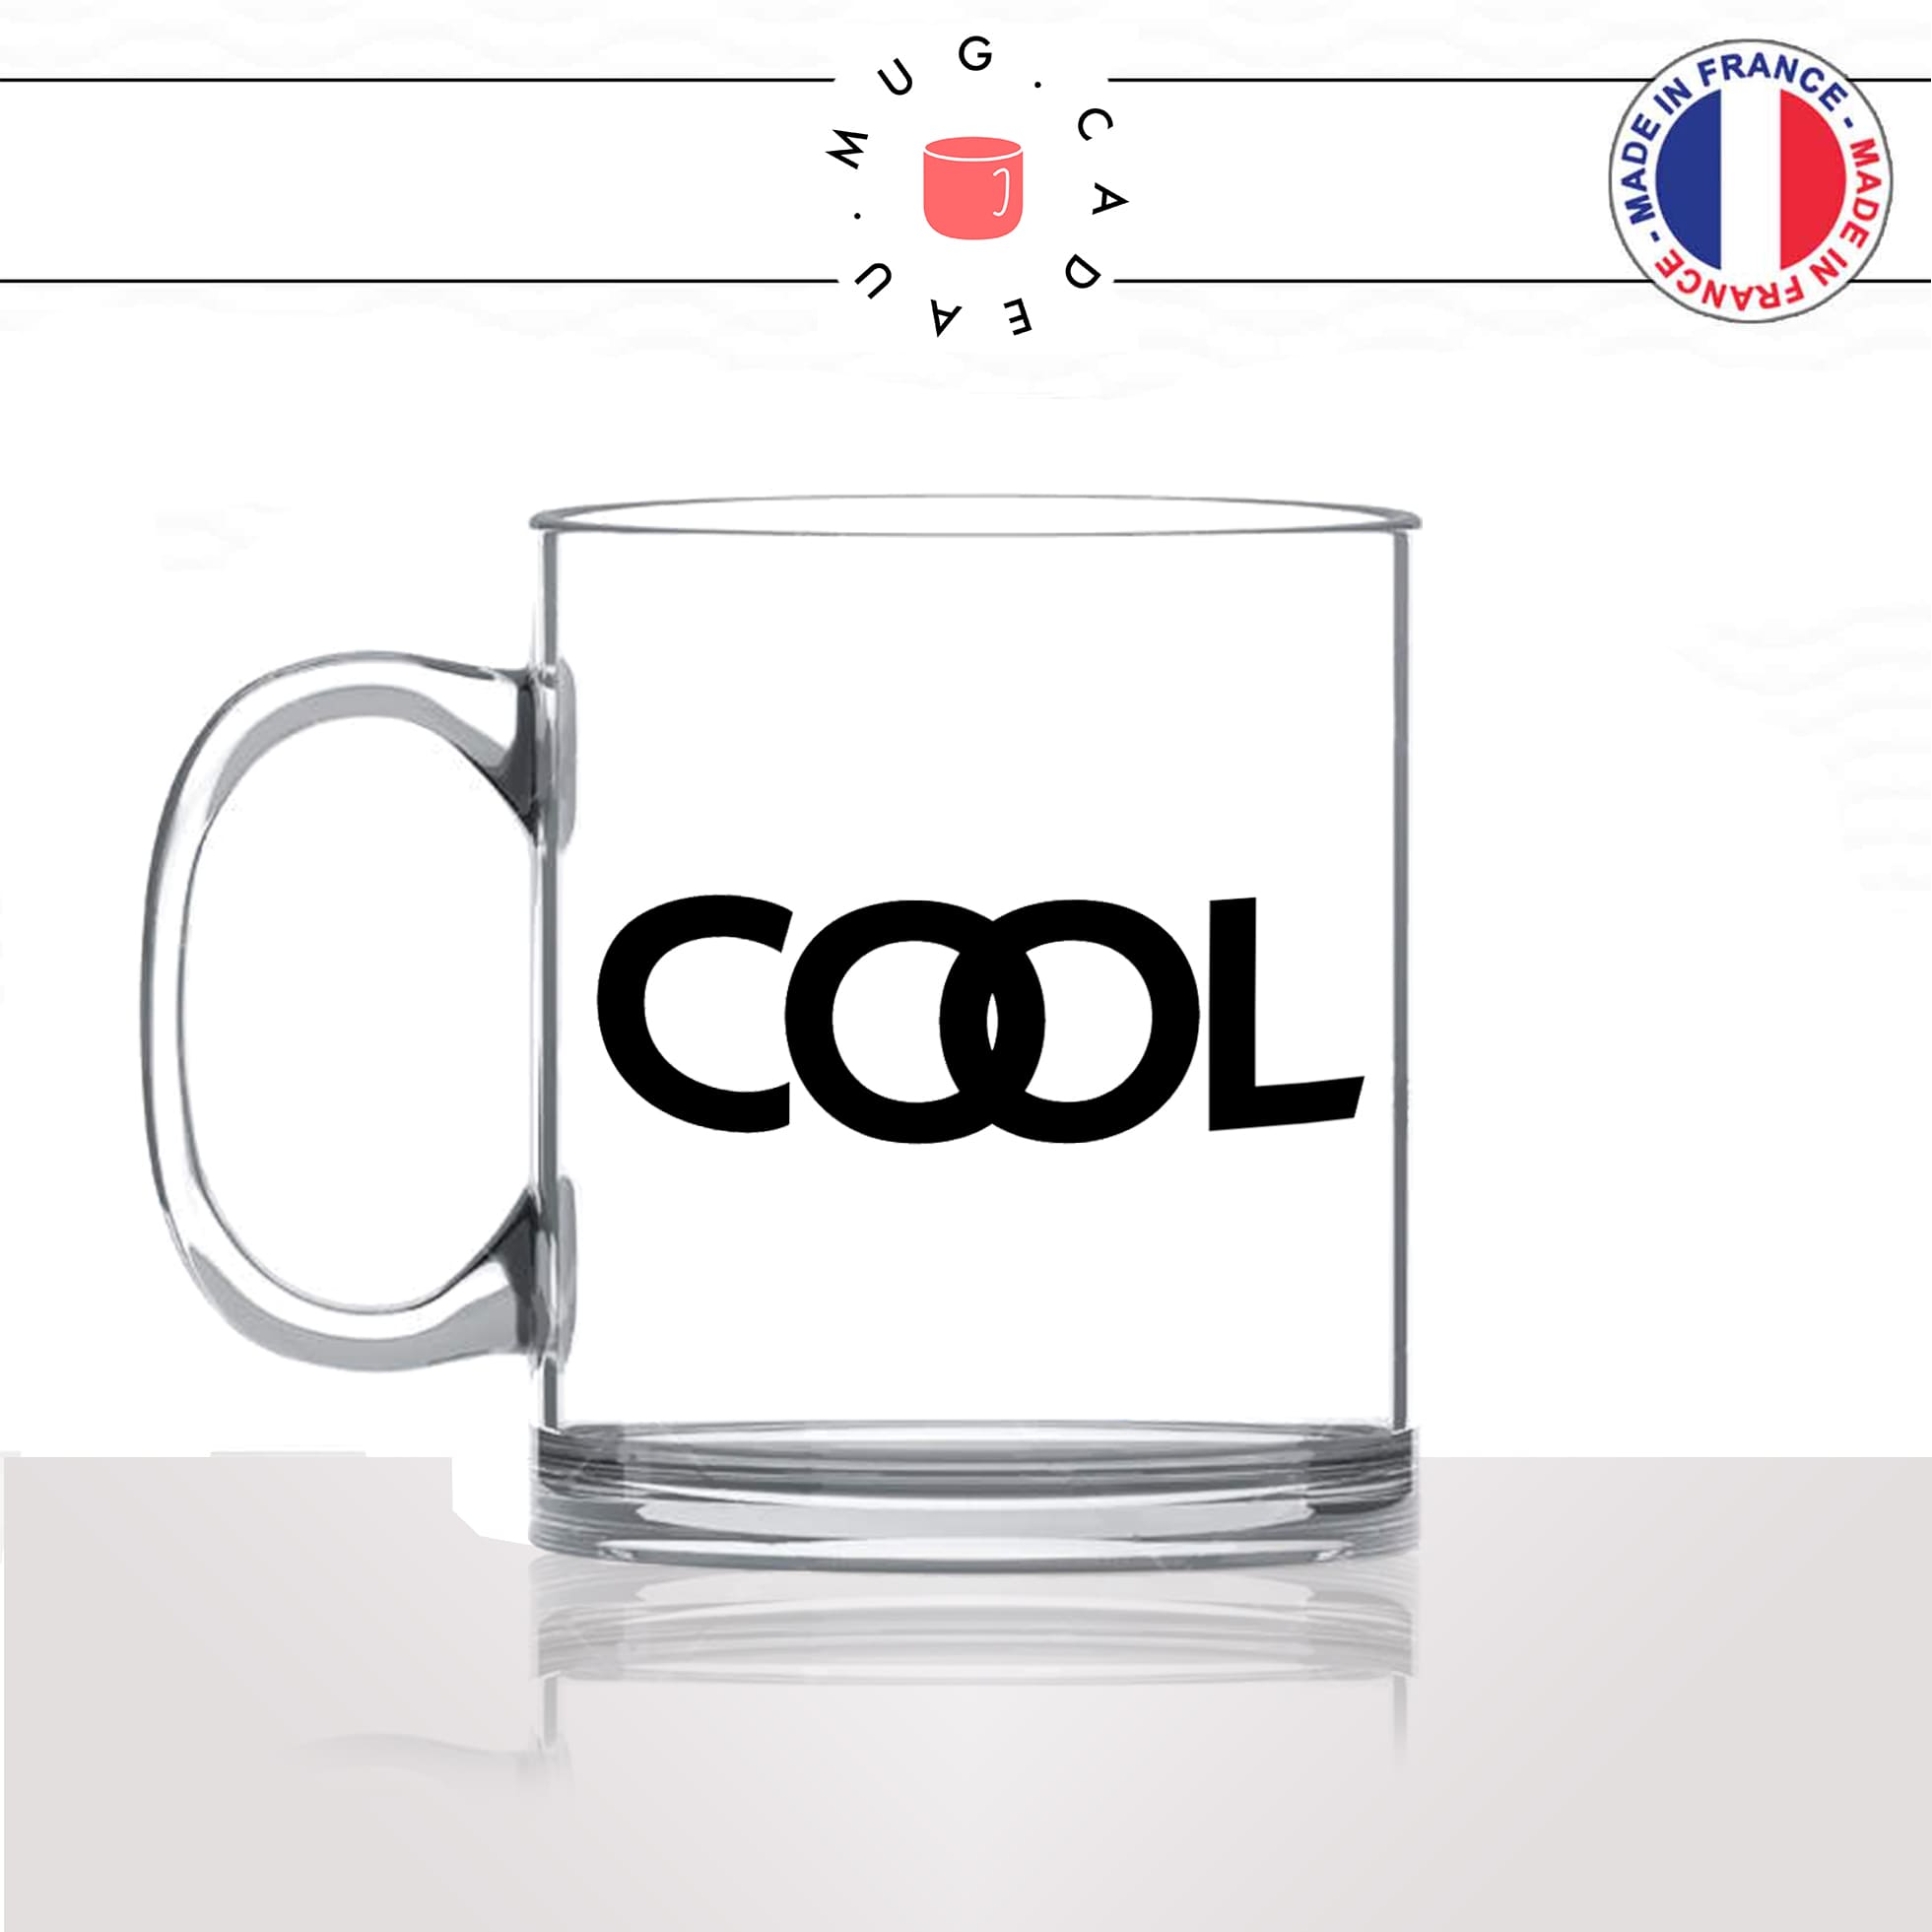 mug-tasse-en-verre-transparent-glass-cool-mot-anglais-expression-jeune-homme-mec-ado-humour-fun-idée-cadeau-originale-coole-unique